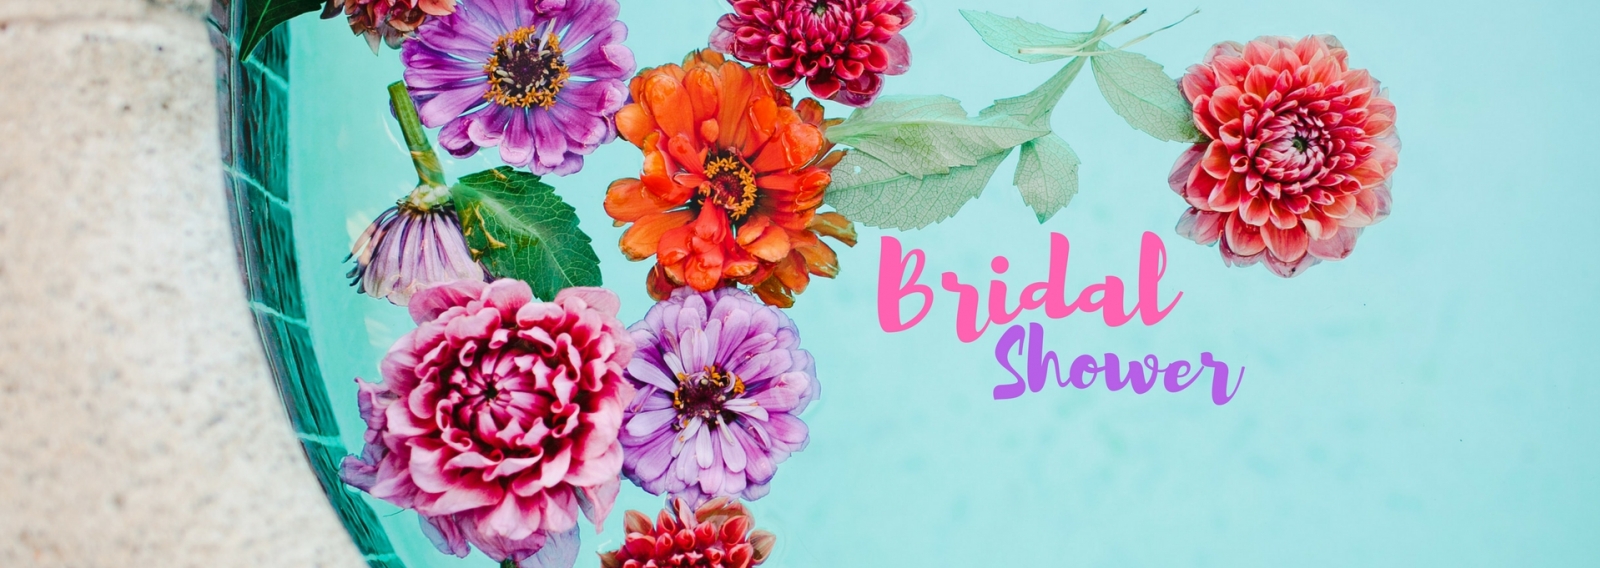 Bridal Shower для алматинских невест в гавайском стиле 11 июня 2017